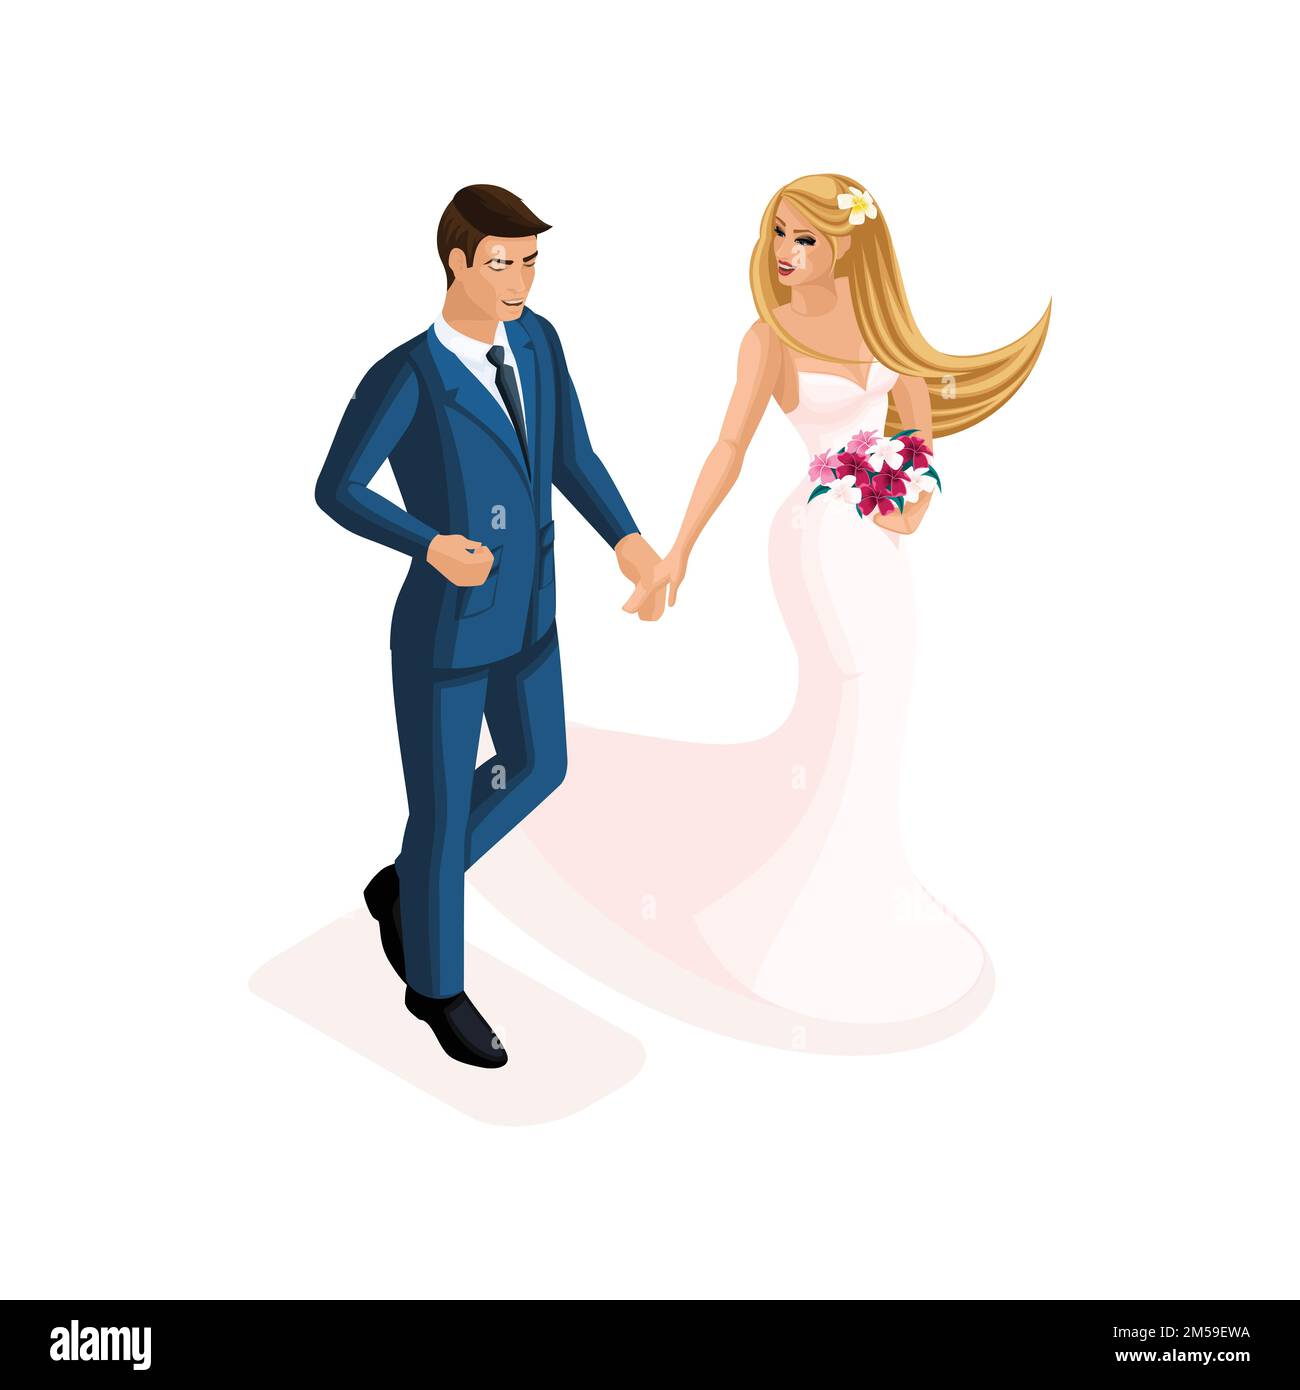 L'isométrie d'un homme et d'une femme à un mariage, la mariée et le marié dans une robe de mariage douce rose. Homme en costume, fille avec fleurs. Illustration de Vecteur